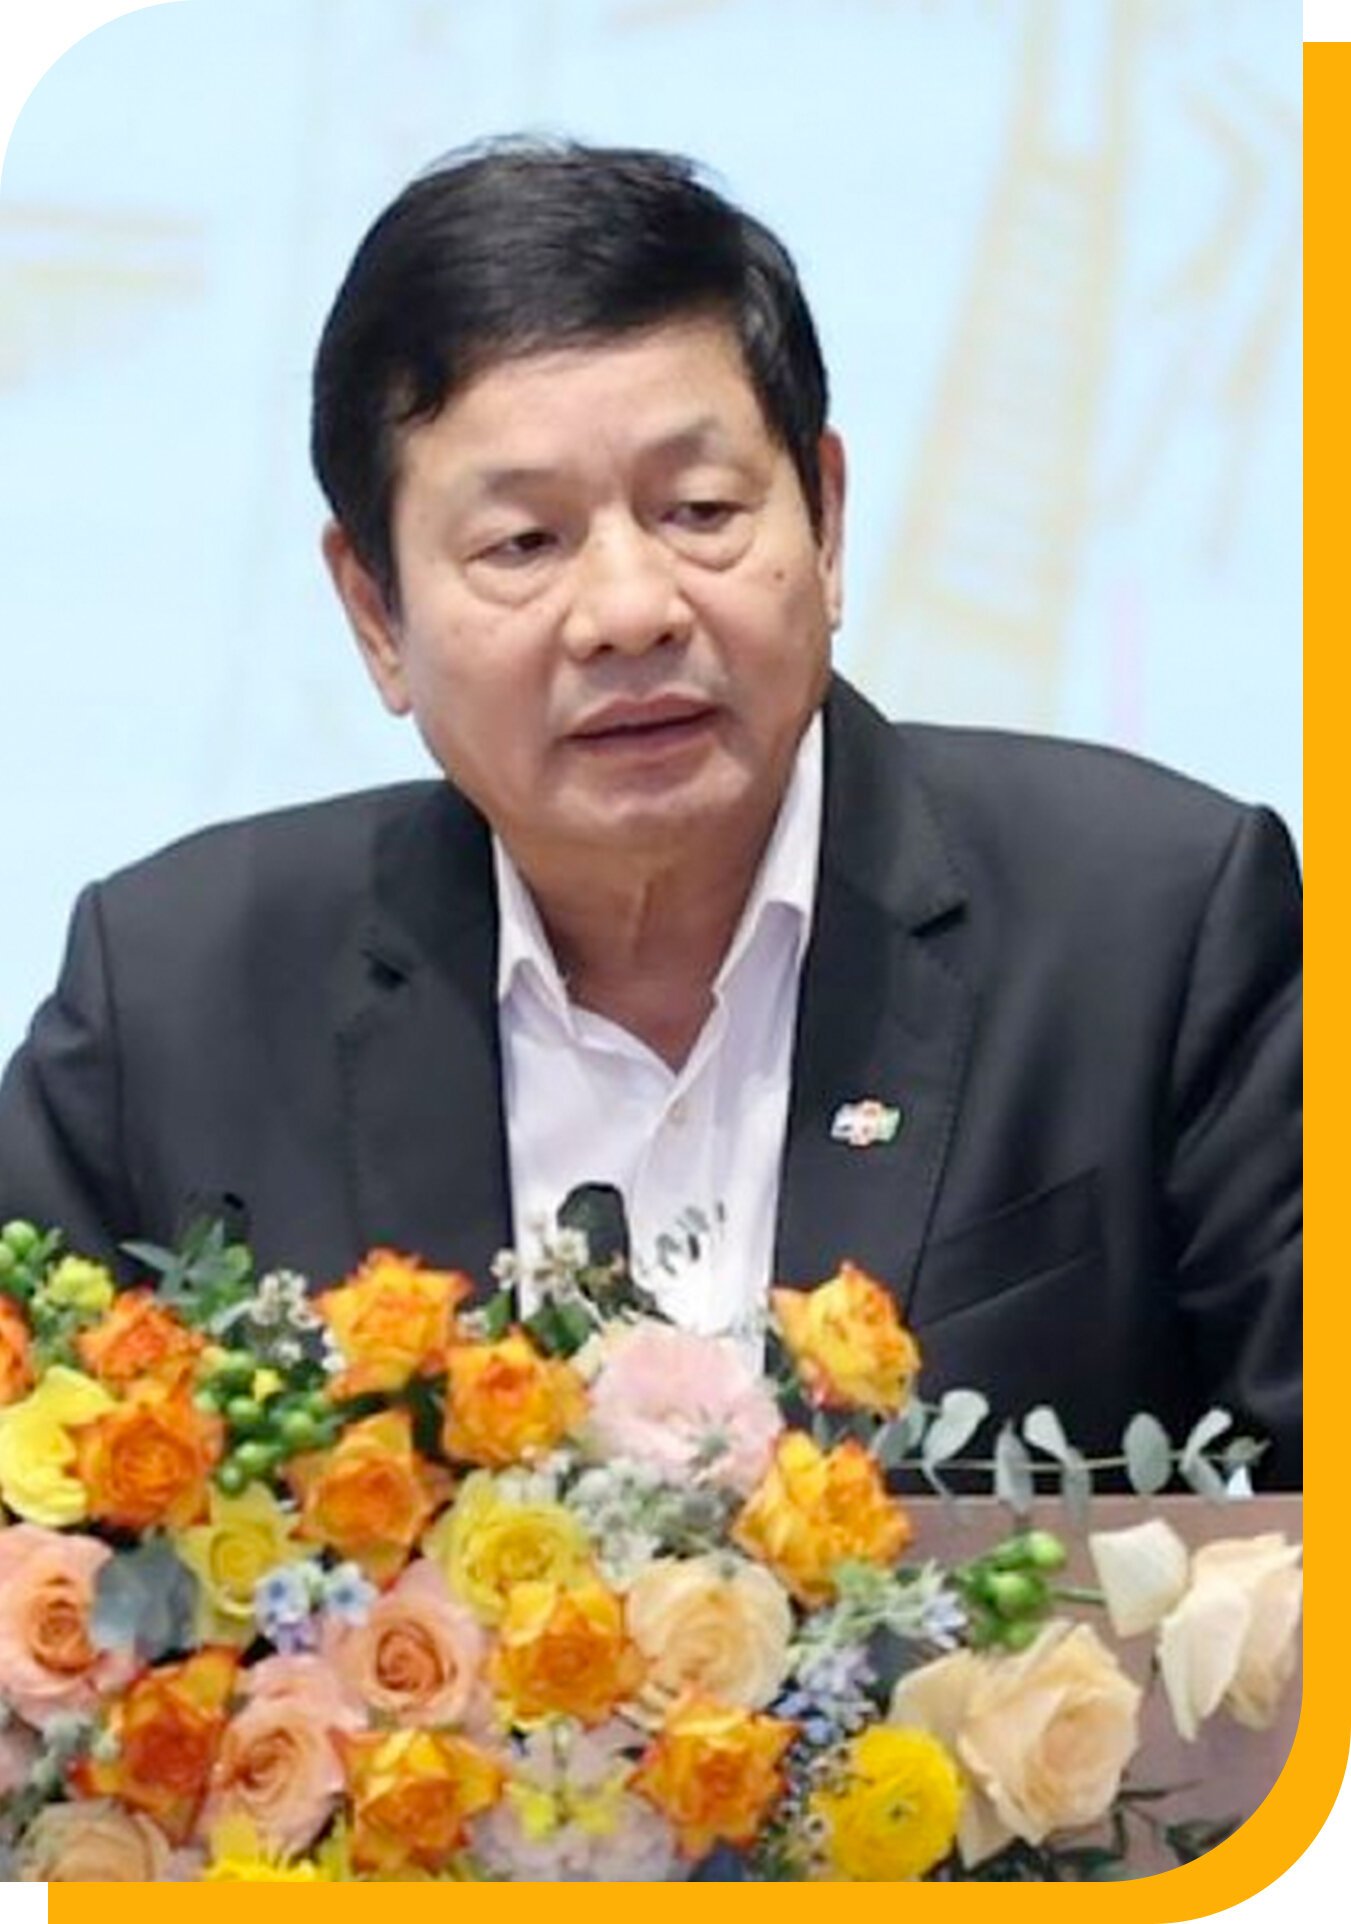 Việc chính của Chủ tịch FPT Trương Gia Bình: Đi bán hàng - Ảnh 4.